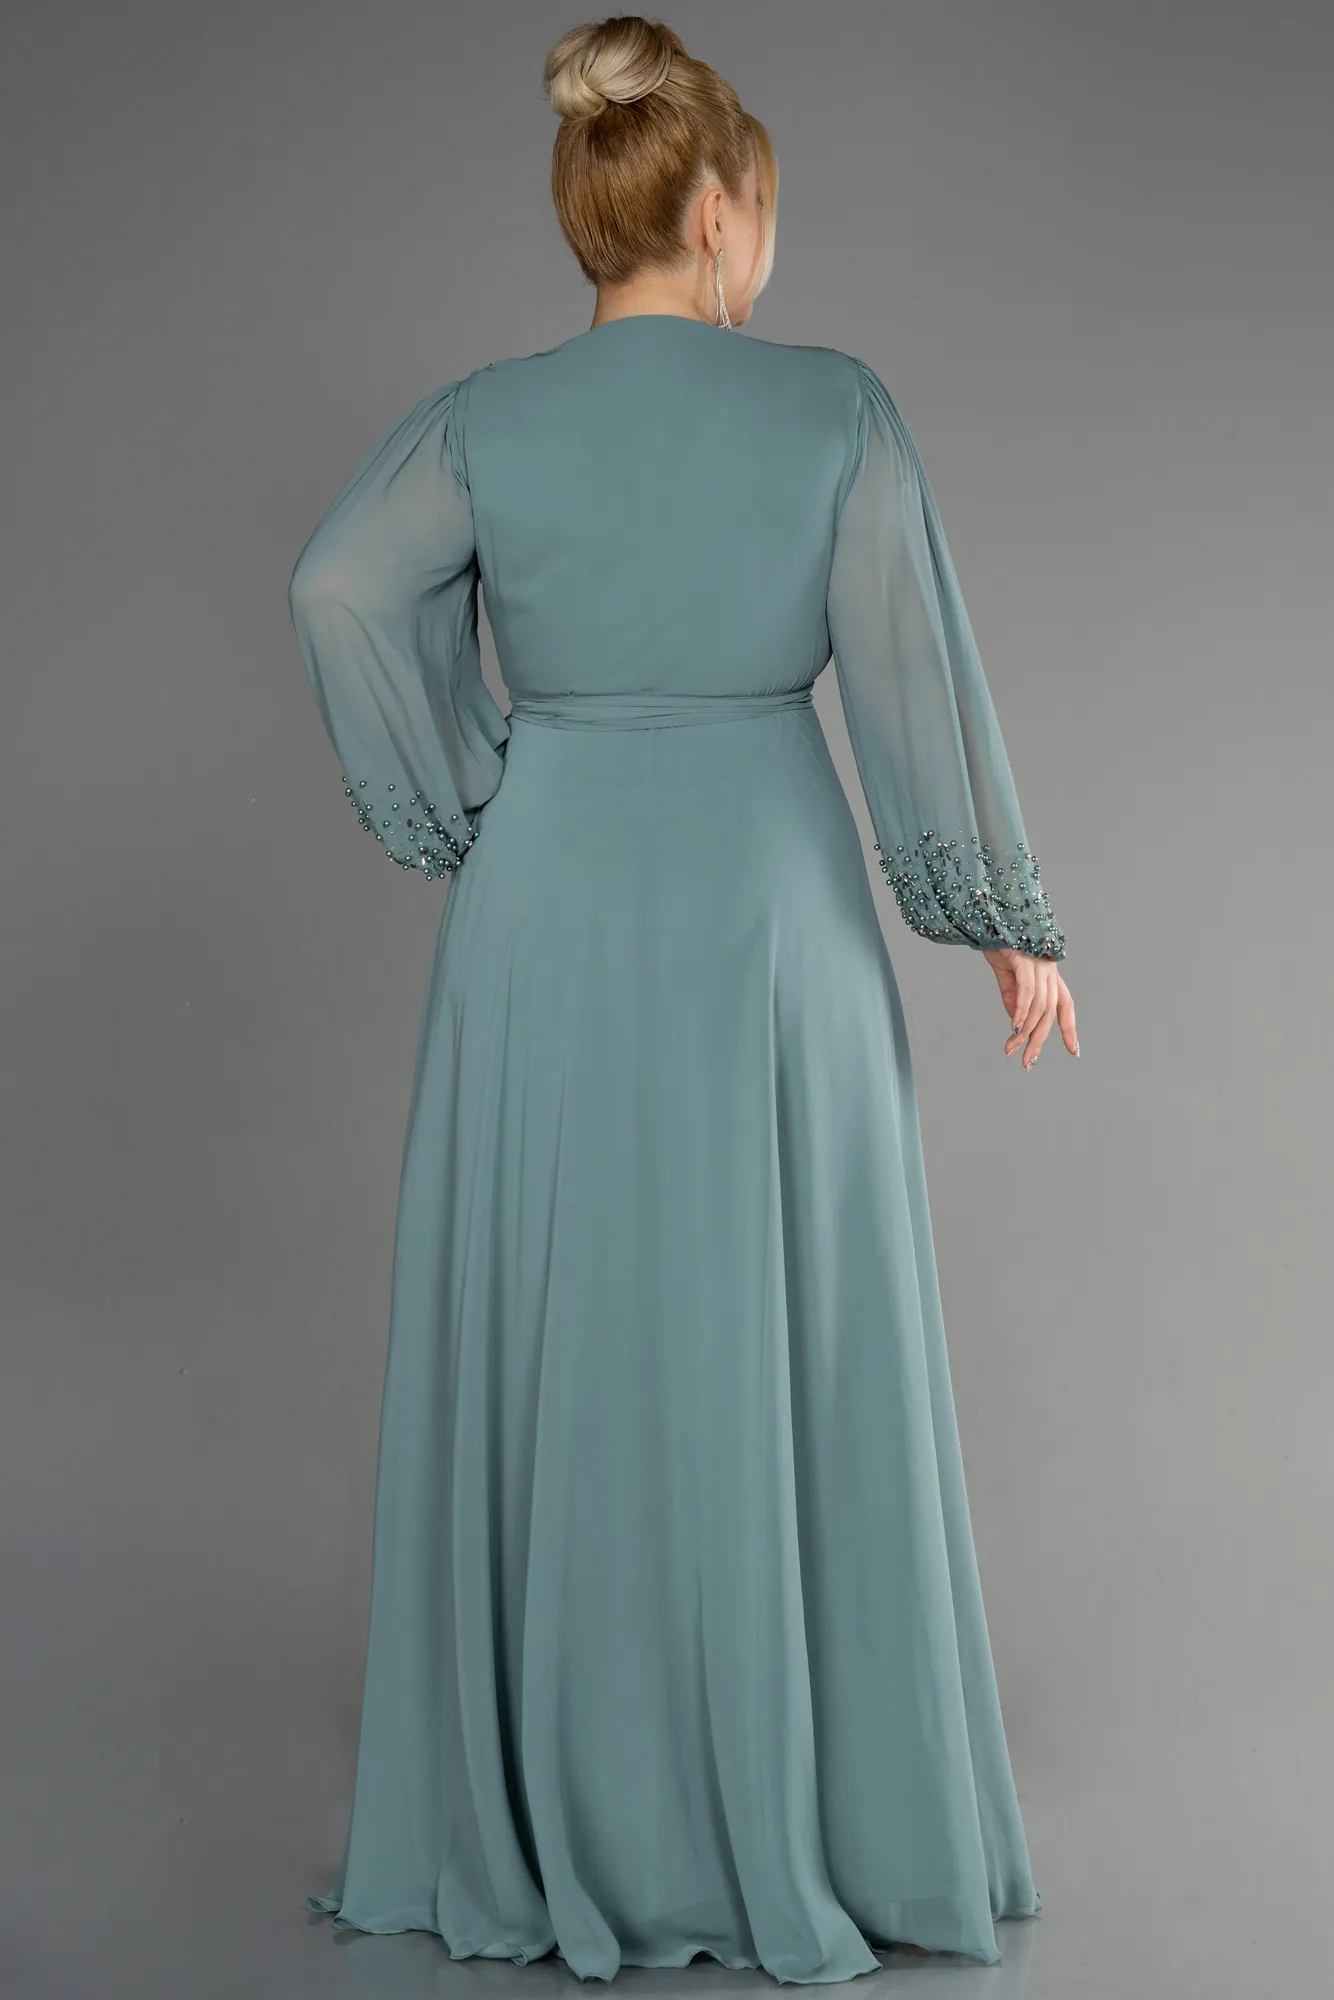 Turquoise-Long Chiffon Plus Size Evening Dress ABU3075